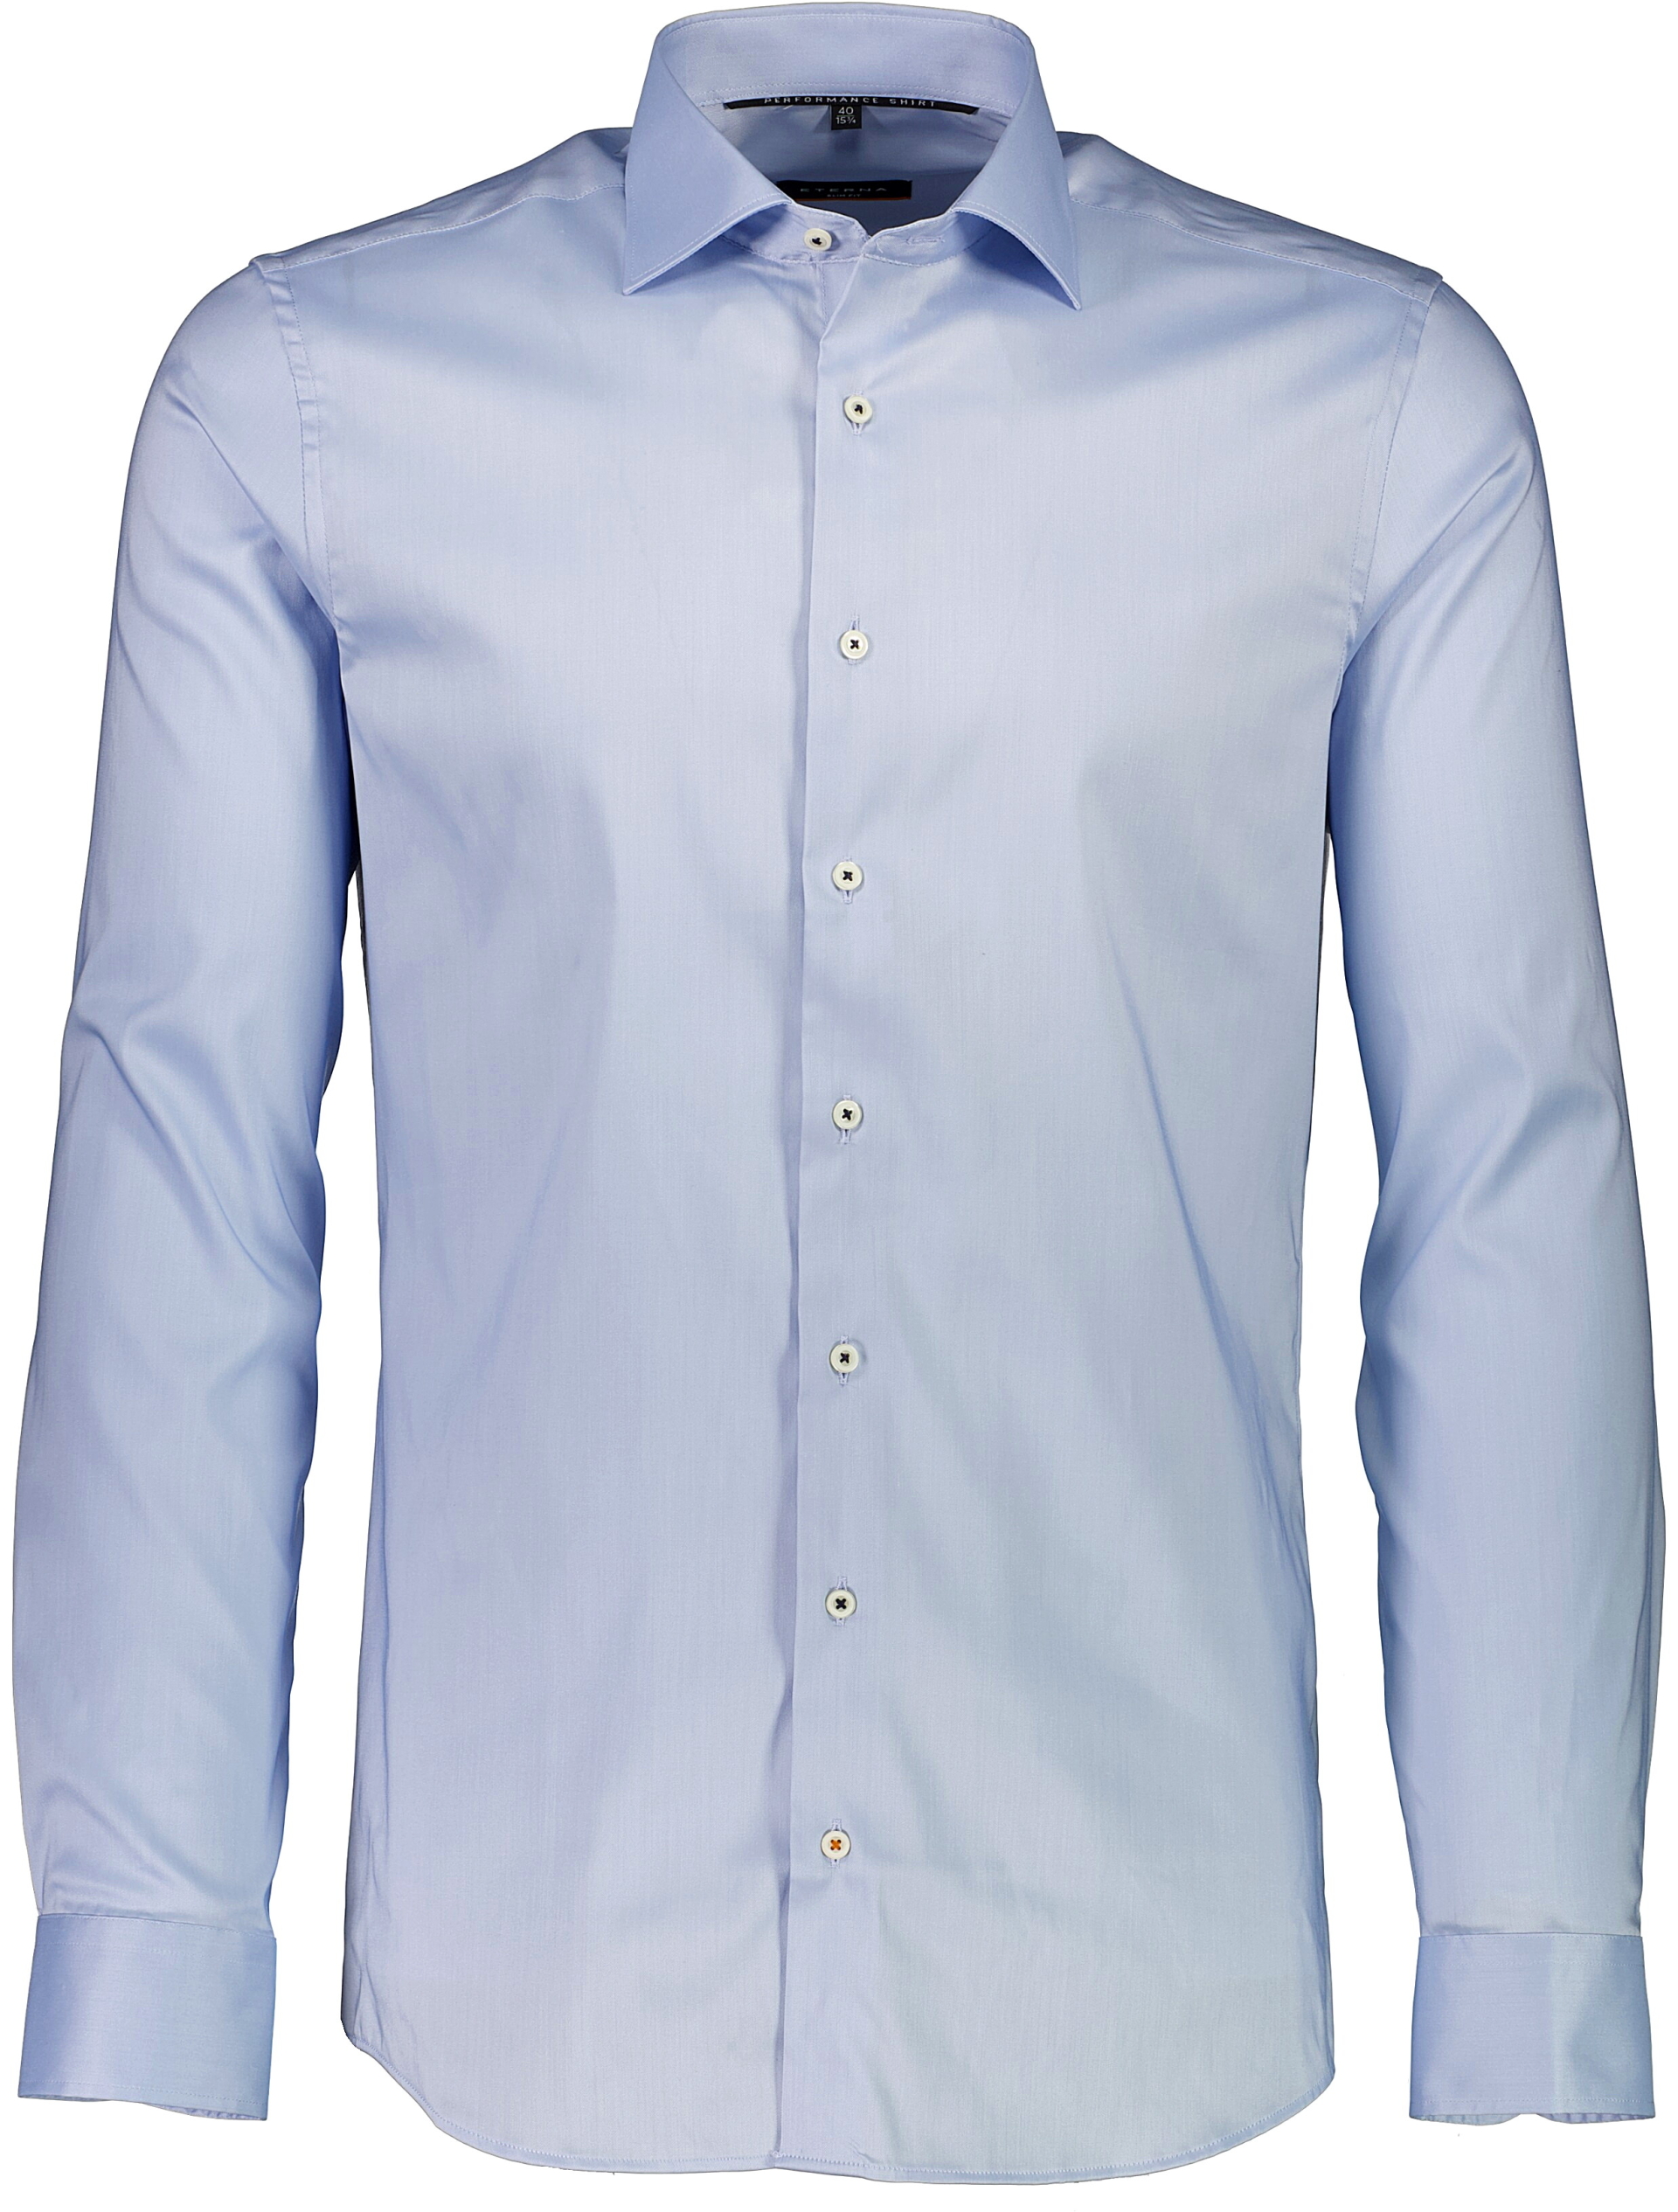 Eterna Business casual skjorte blå / 12 lt blue